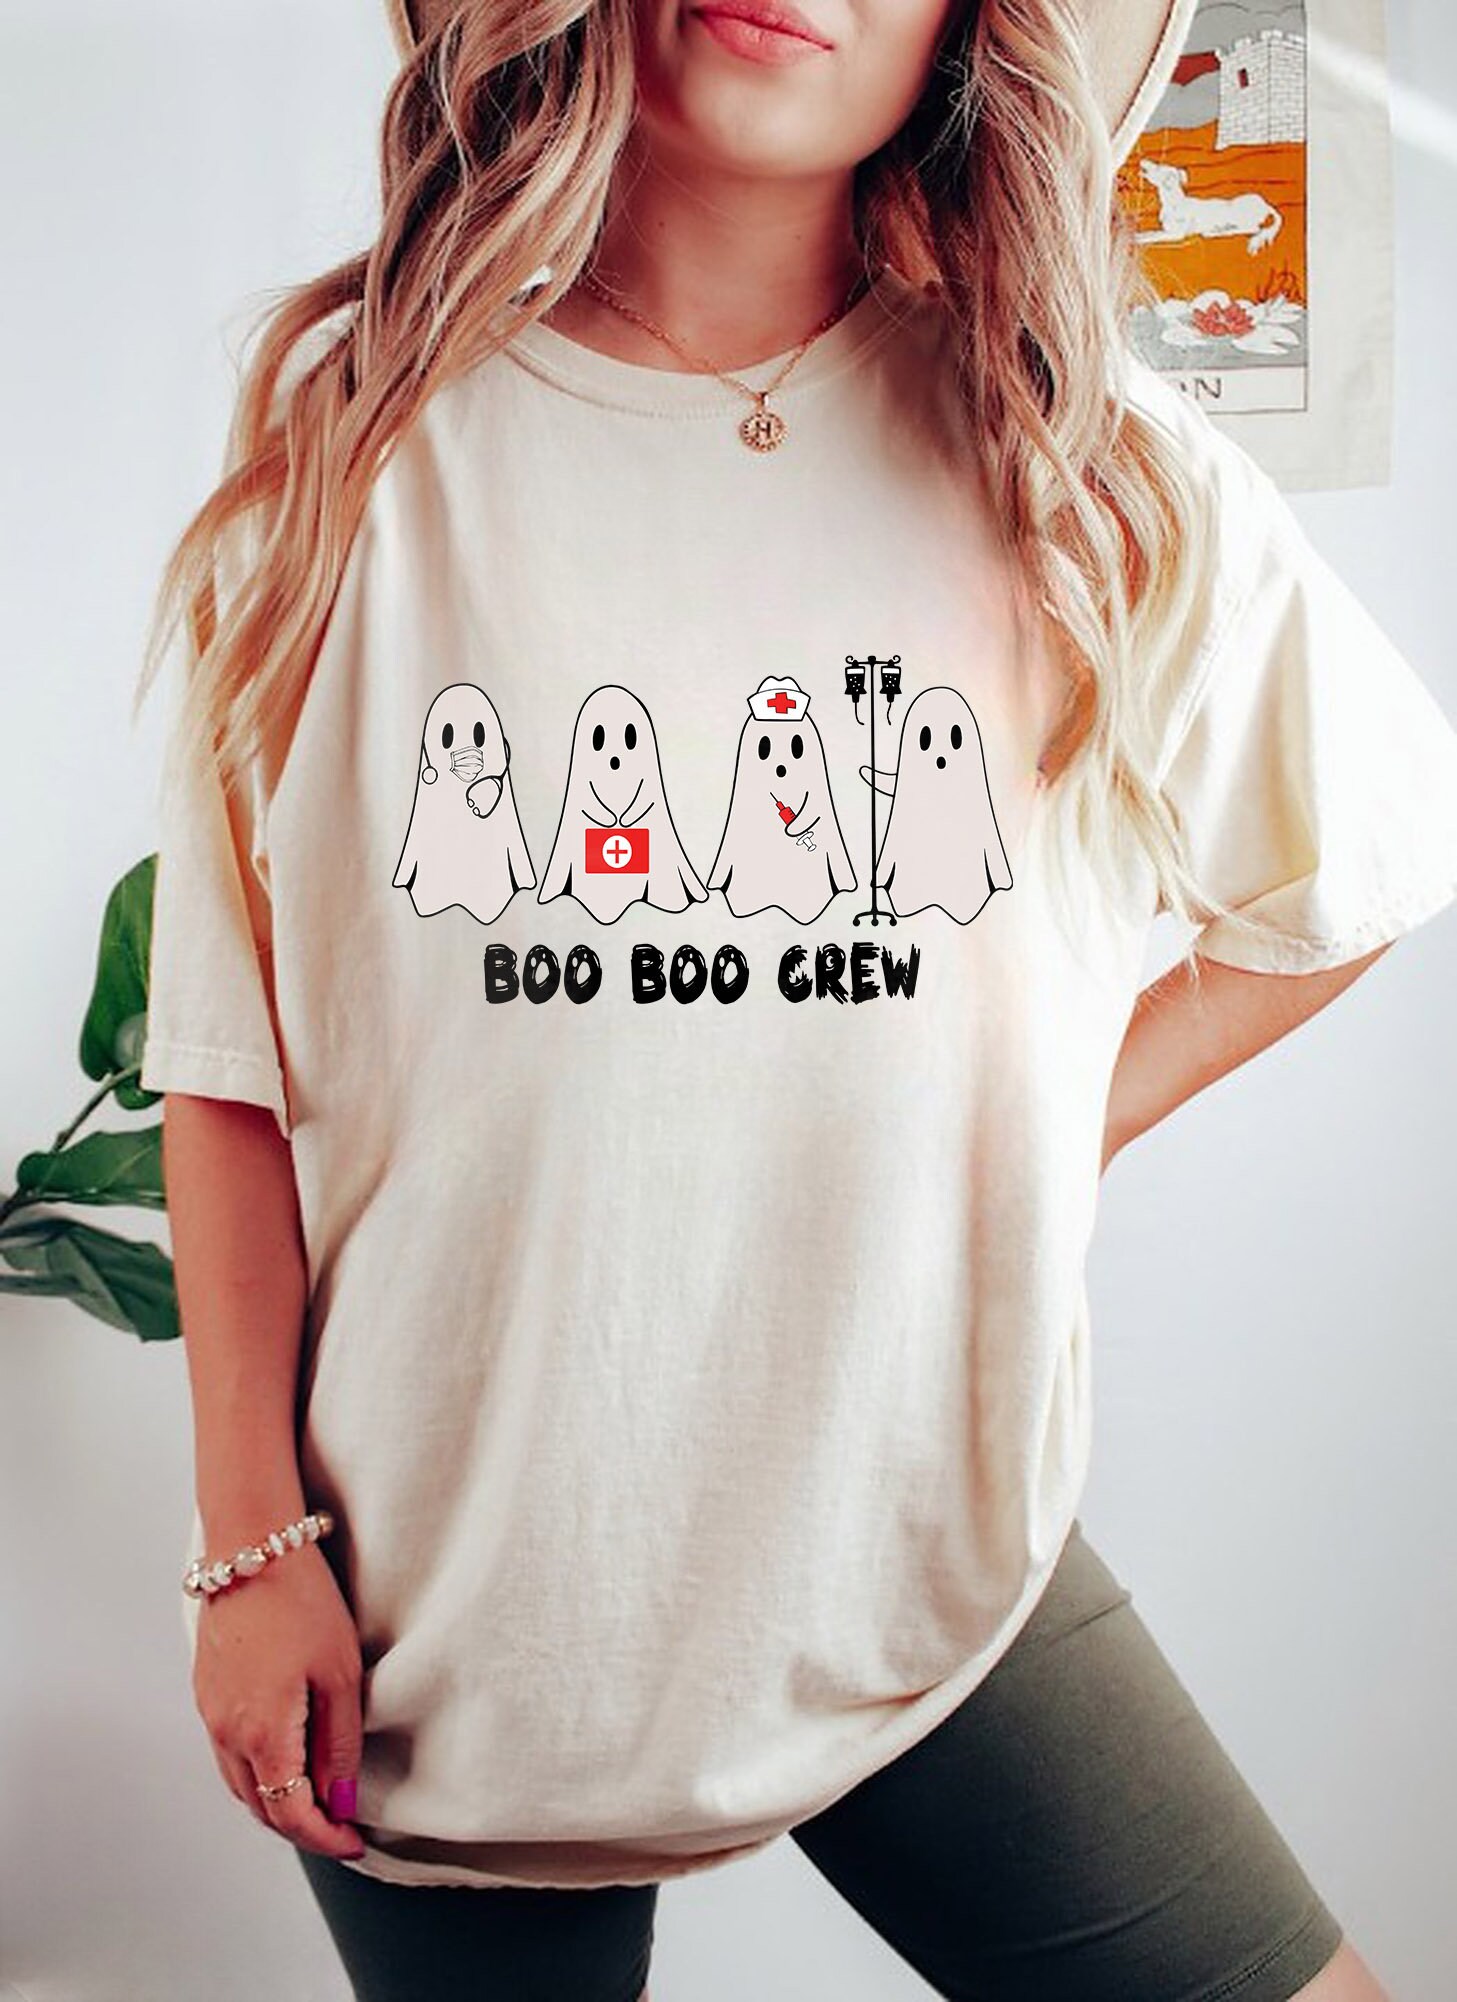 Discover Boo Boo Crew Shirt, Boo Nurse Shirt, Cute Nurse Shirt, Halloween Nurse Shirt, Spooky Nurse Shirt, Halloween Nurse Gift, Nursing School Shirt